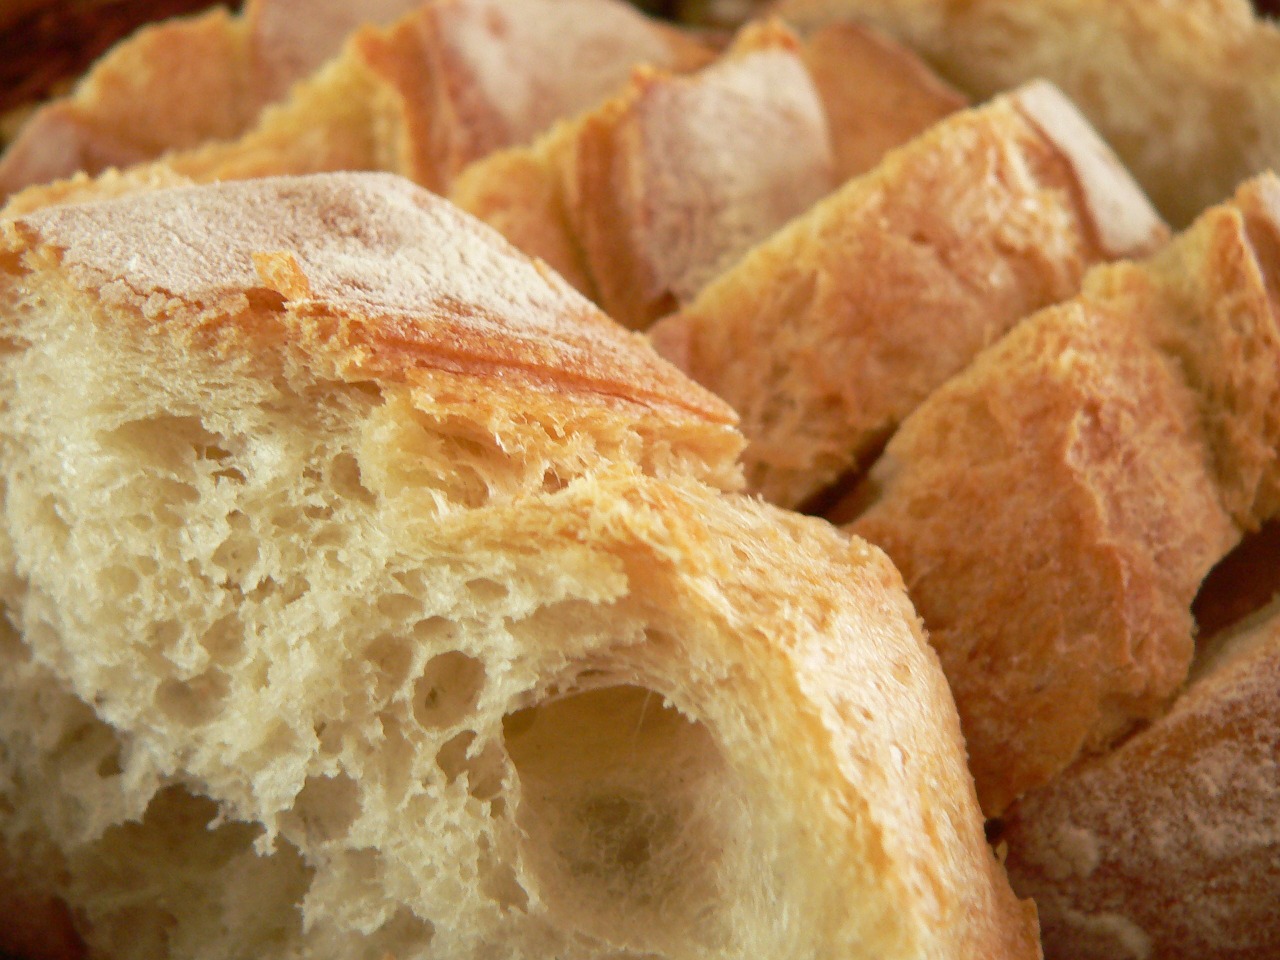 Pan de harina blanca refinada